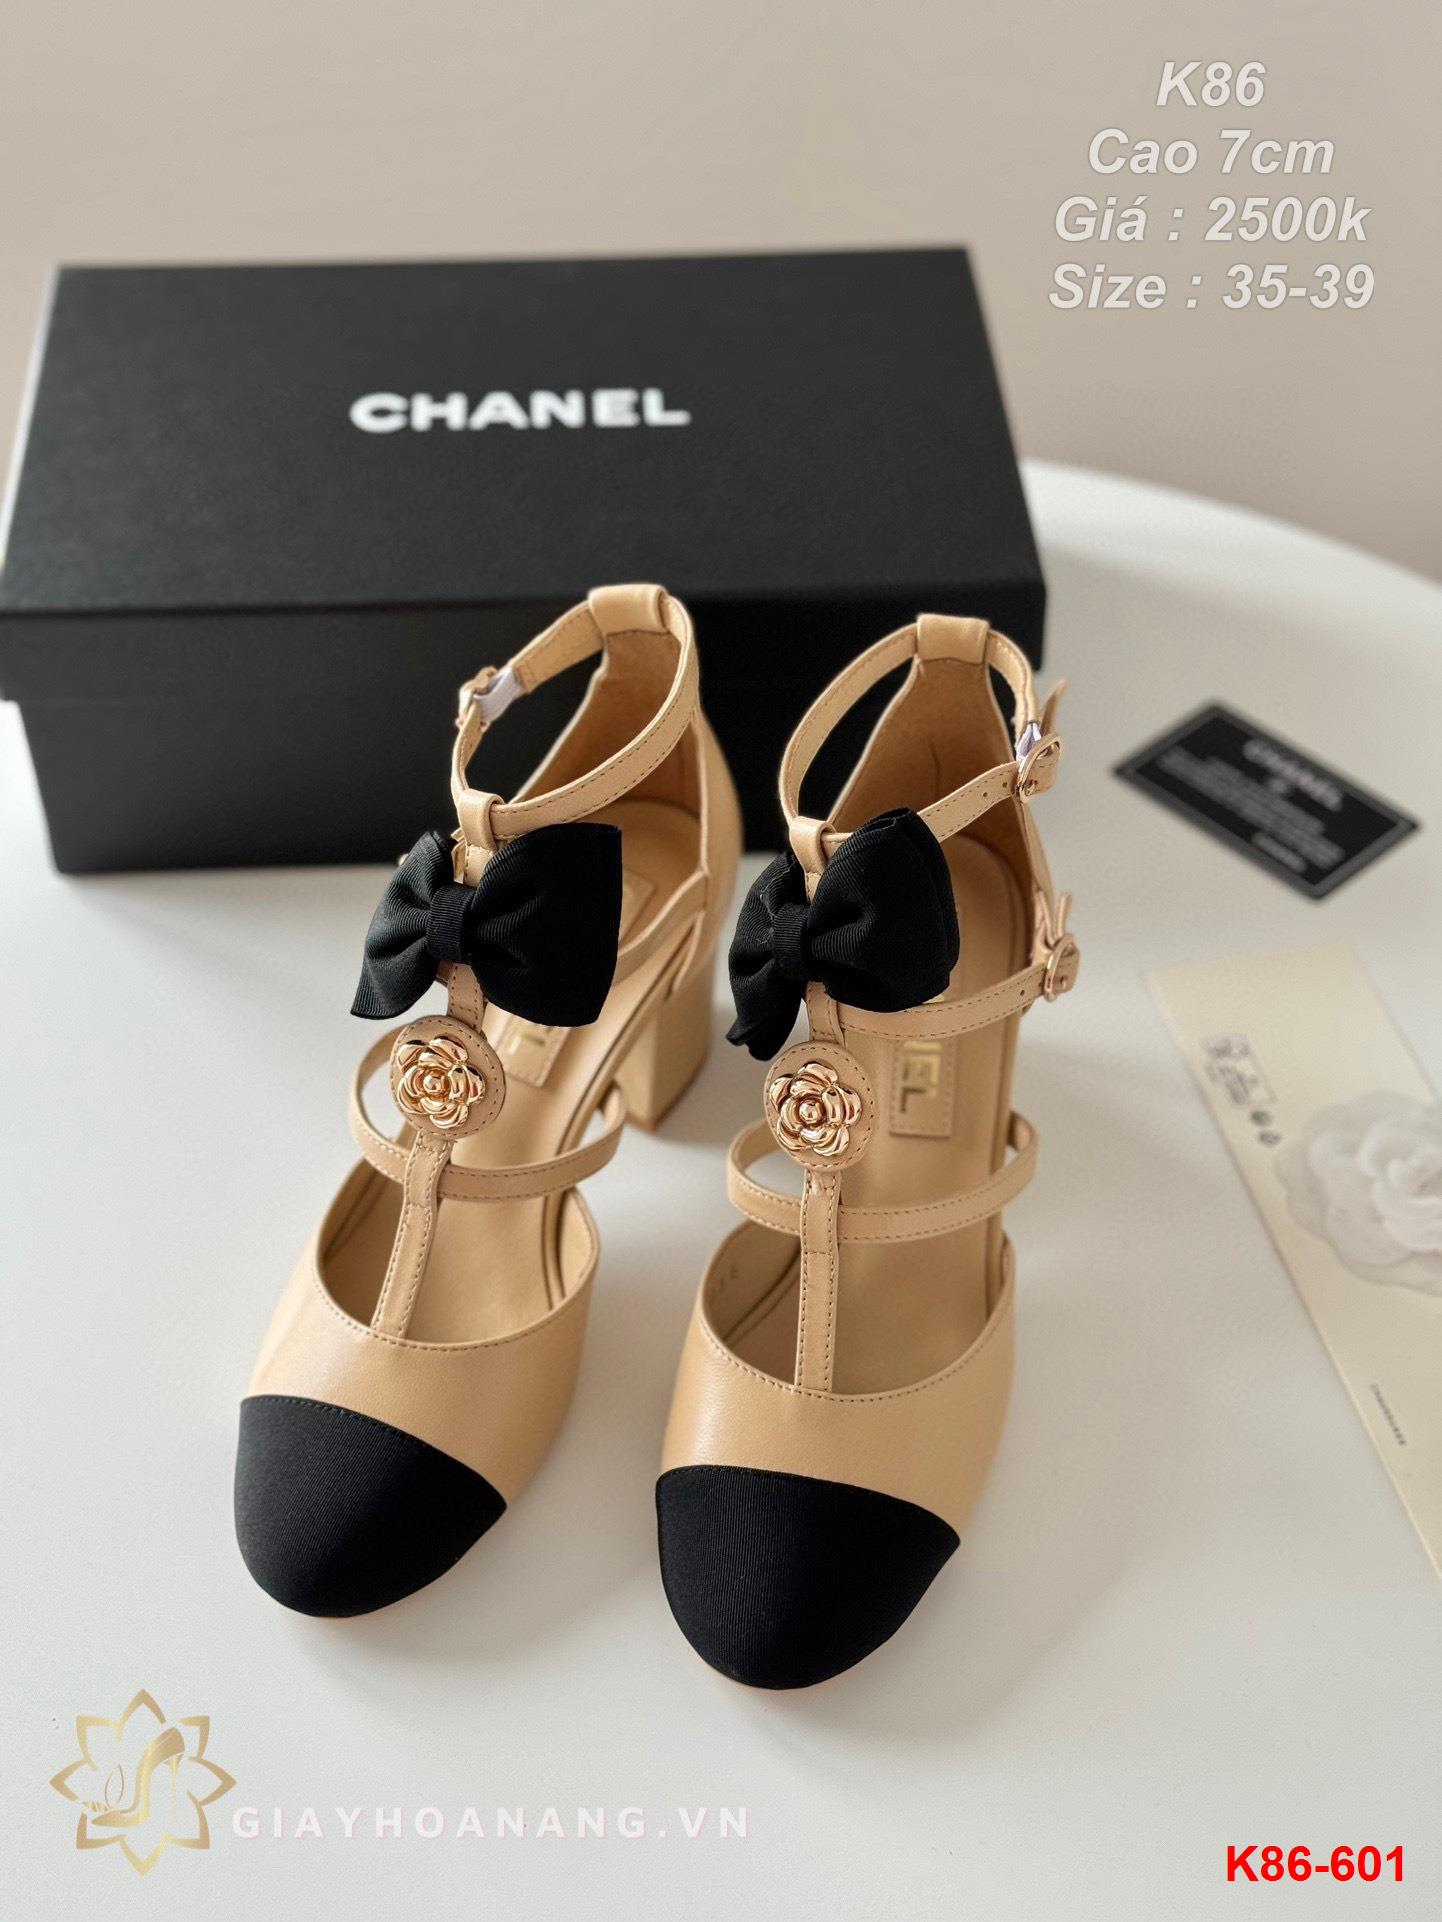 K86-601 Chanel sandal cao gót 7cm siêu cấp